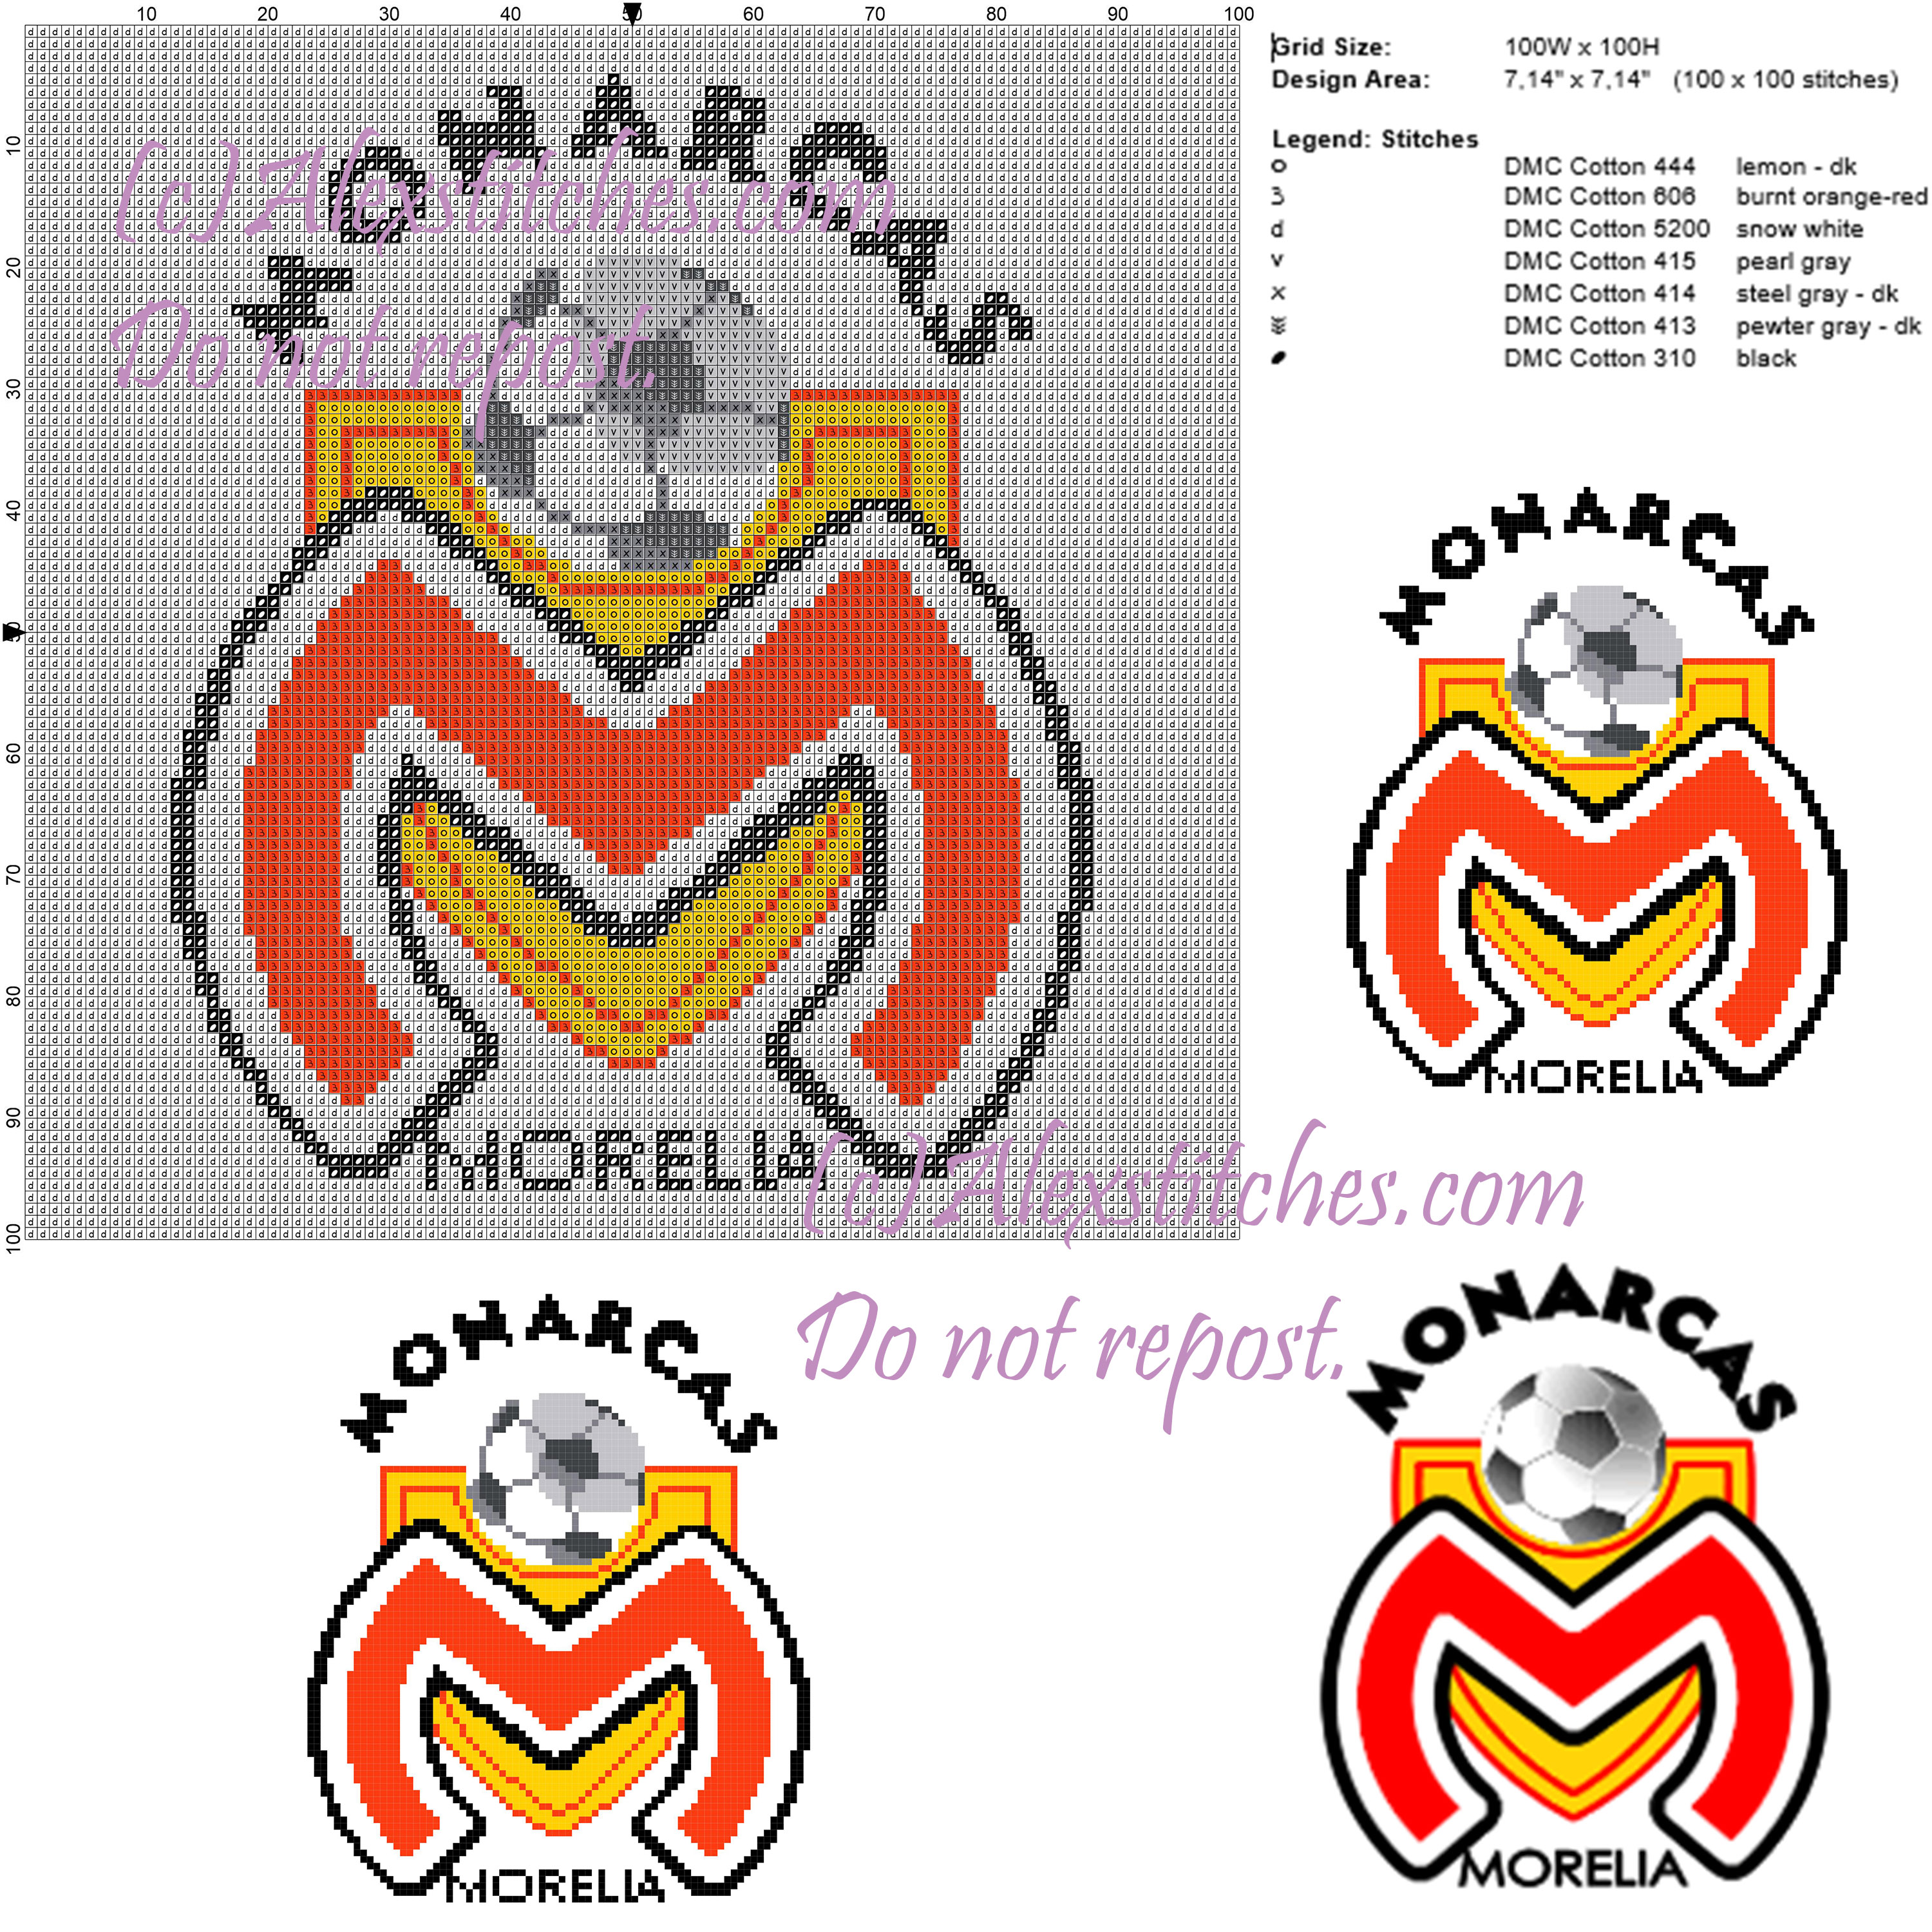 Monarcas Morelia logo association mexican football 100x100 7 colors